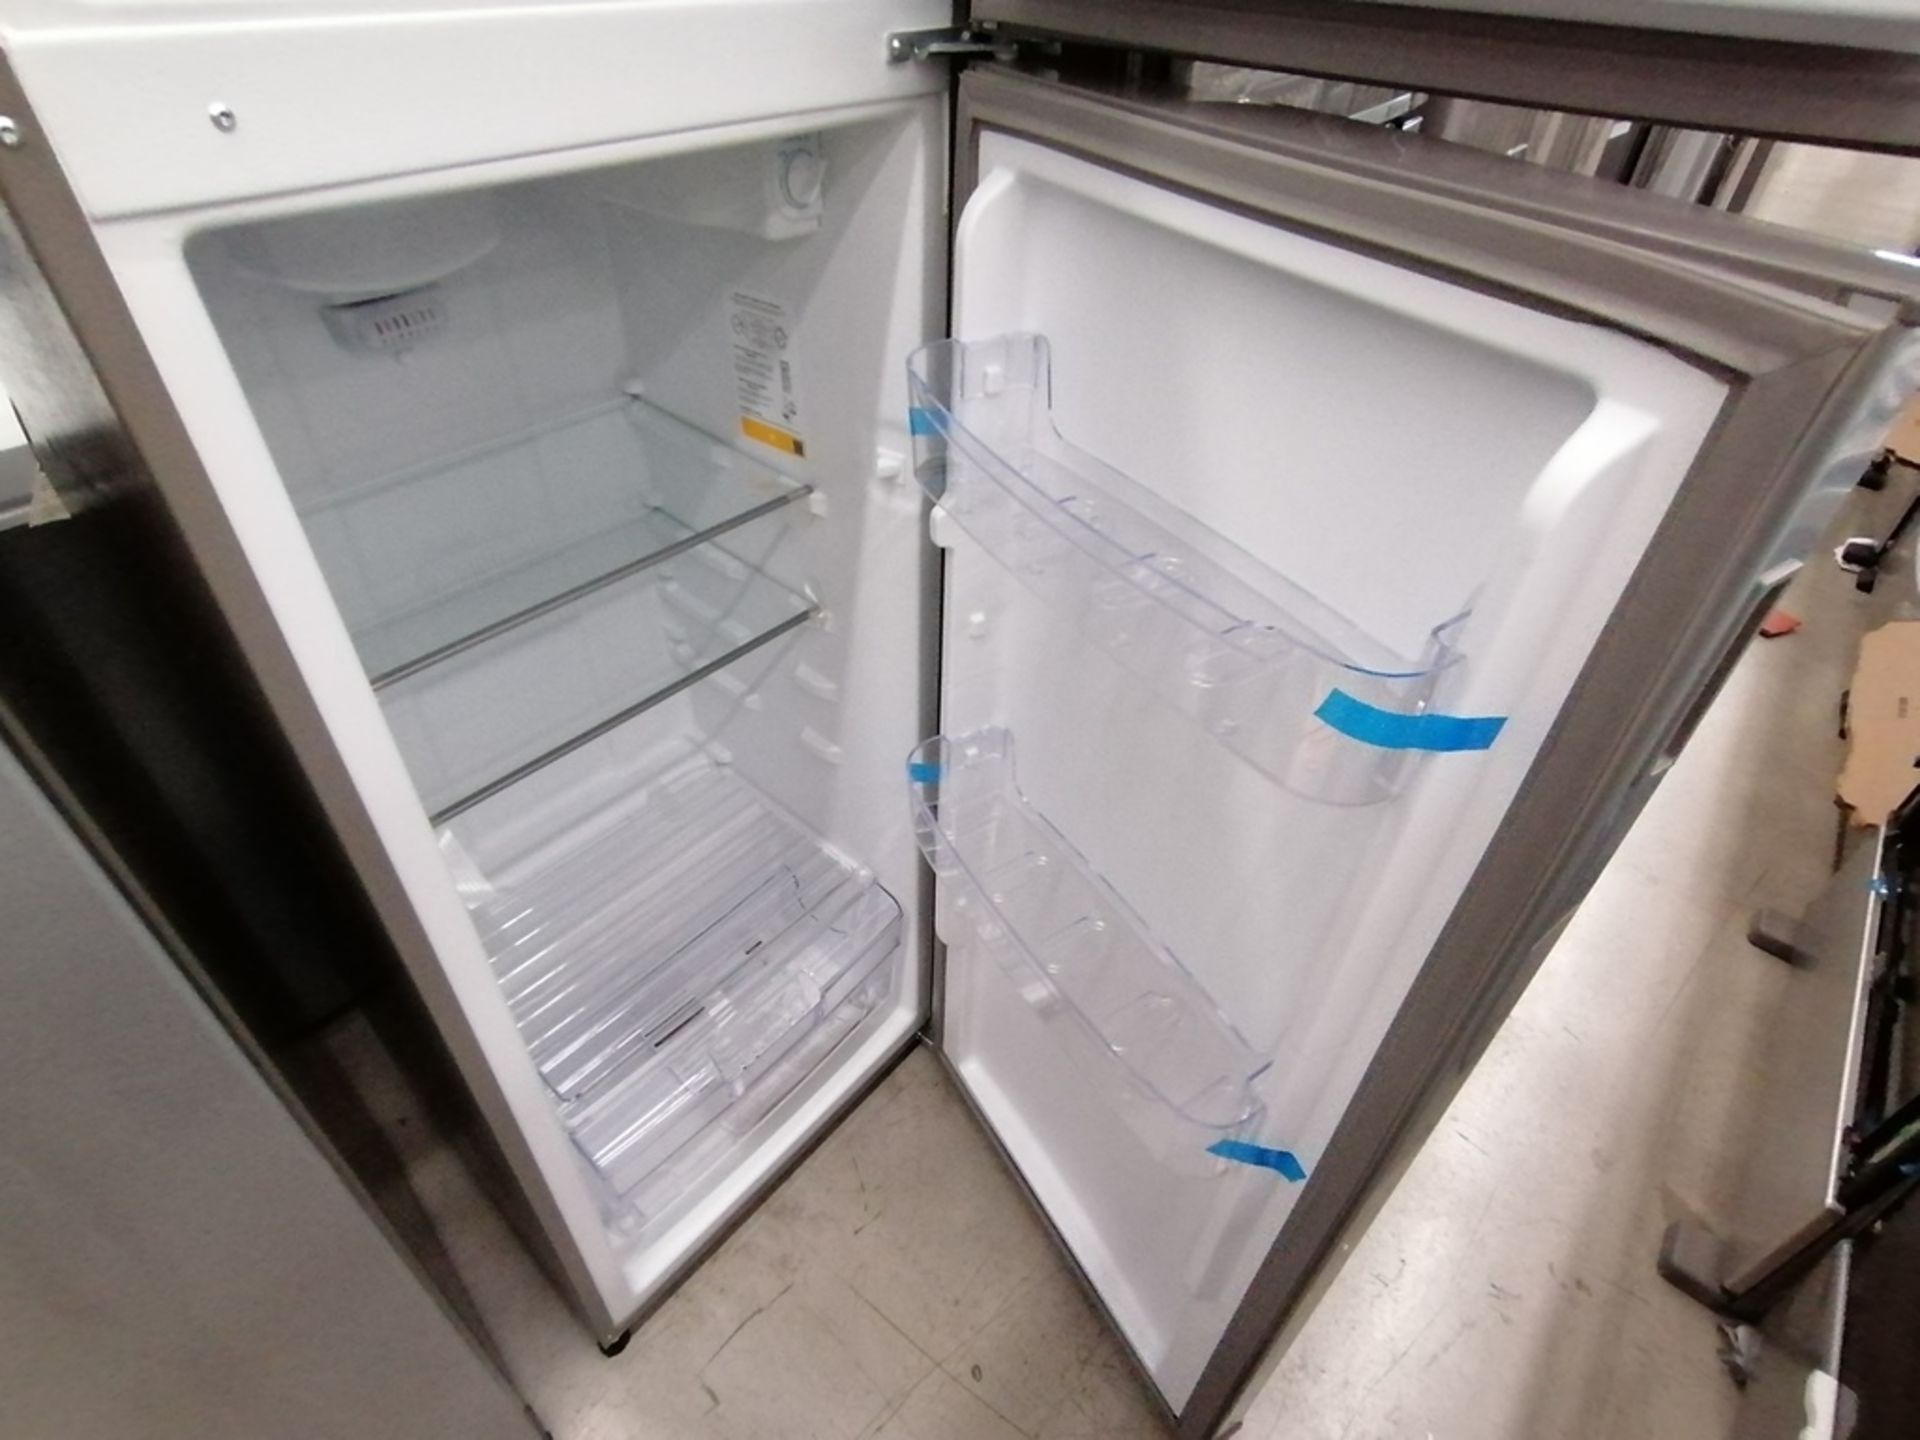 Lote de 2 refrigeradores incluye: 1 Refrigerador, Marca Acros, Modelo AT9007G, Serie VRA4332547, Co - Image 13 of 14